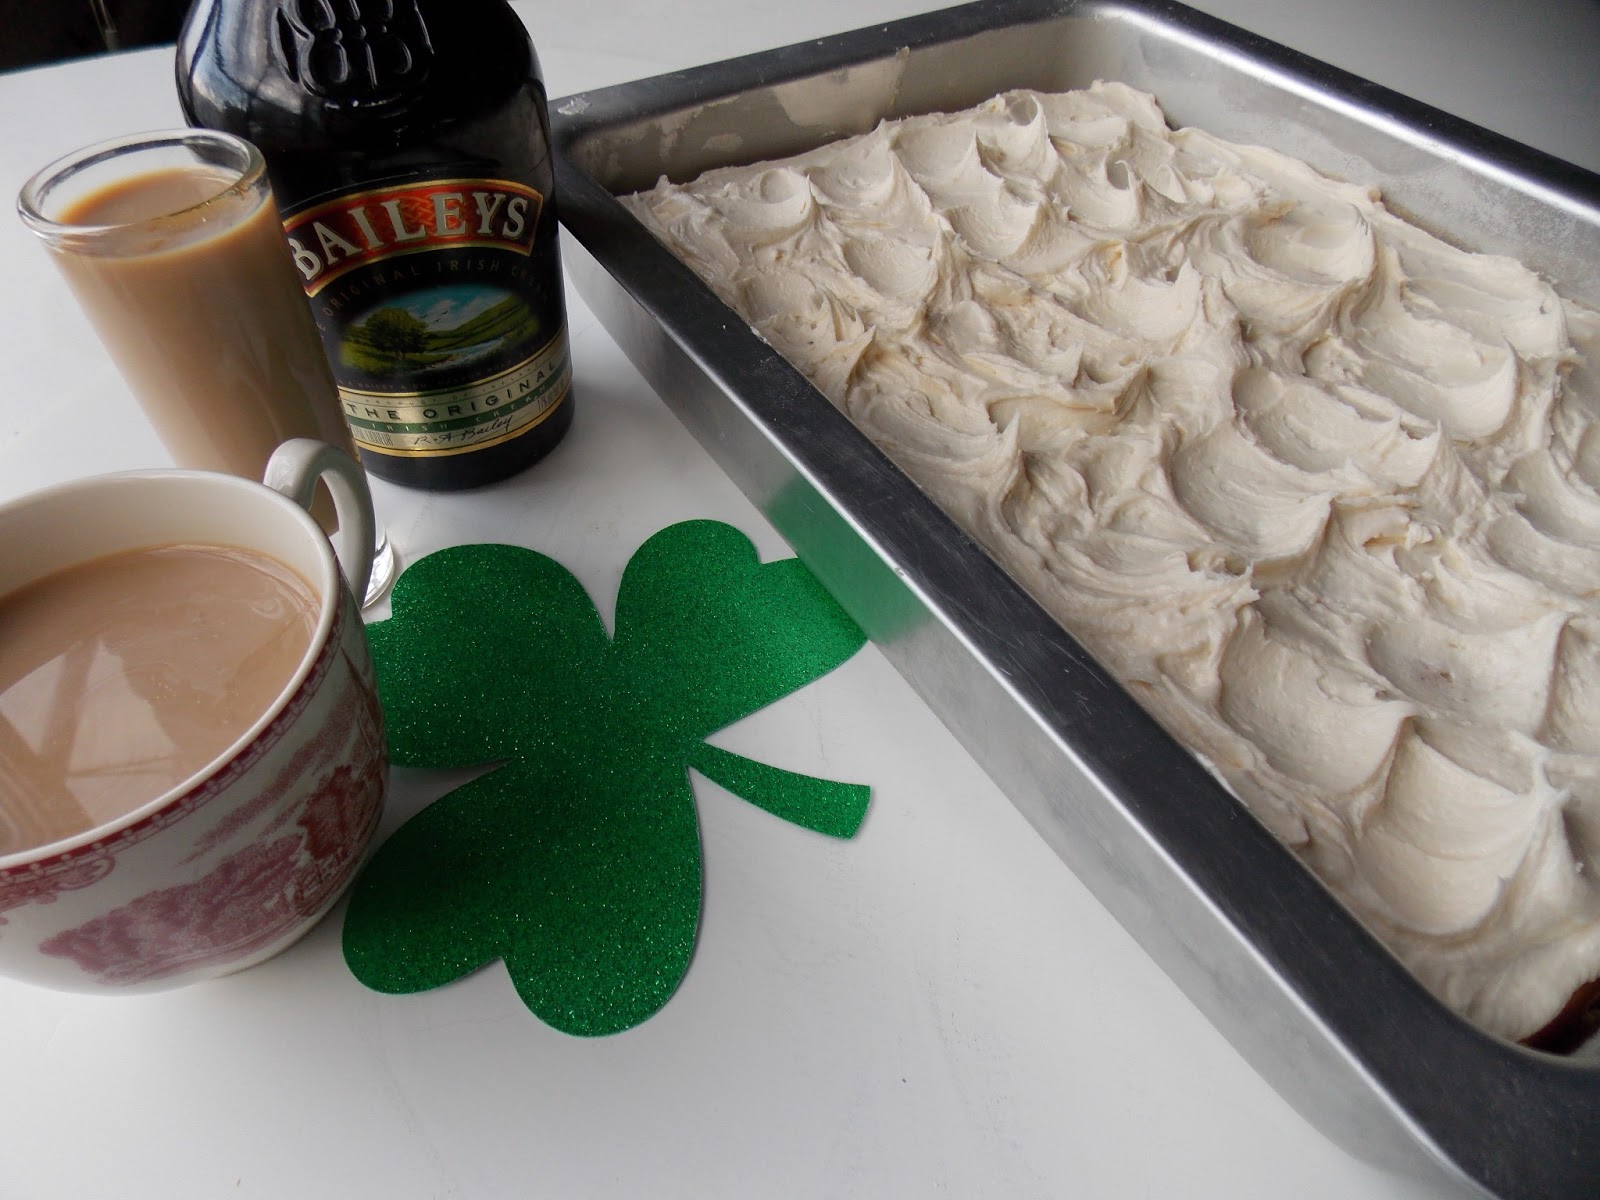 How To Make Coffee With Baileys Irish Cream